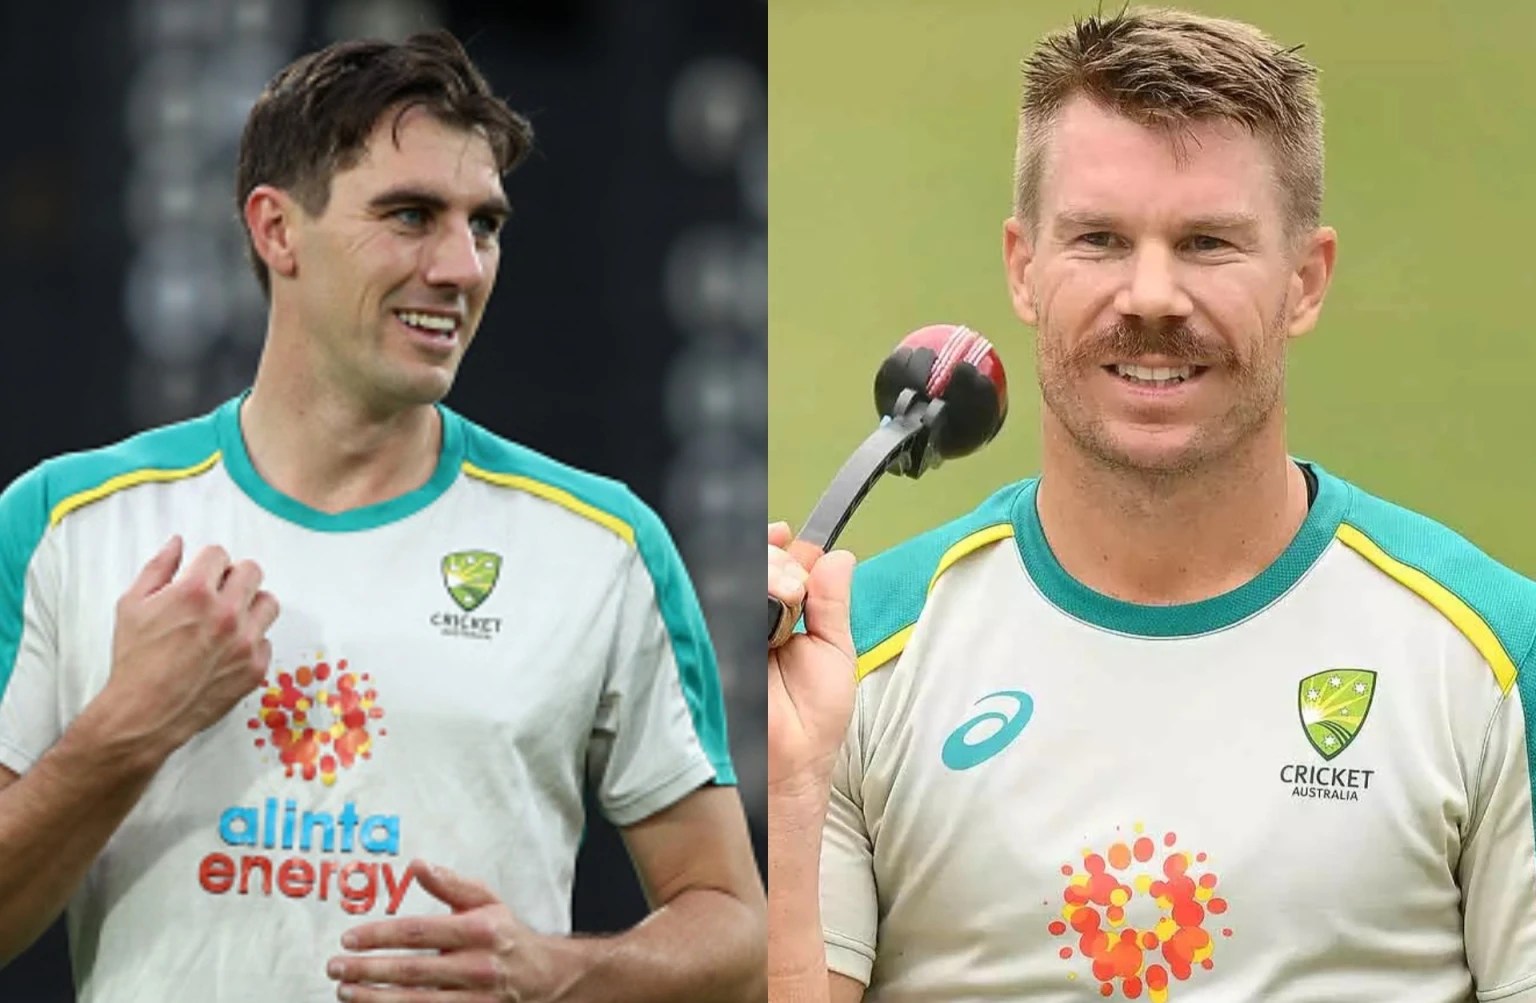 Australia’s NEW ODI Captain: 2023 वनडे वर्ल्डकप तक ऑस्ट्रेलियाई टीम की कप्तानी संभालेंगे पैट कमिंस, डेविड वार्नर, स्टीव स्मिथ को किया गया नजरअंदाज : Follow Live Updates